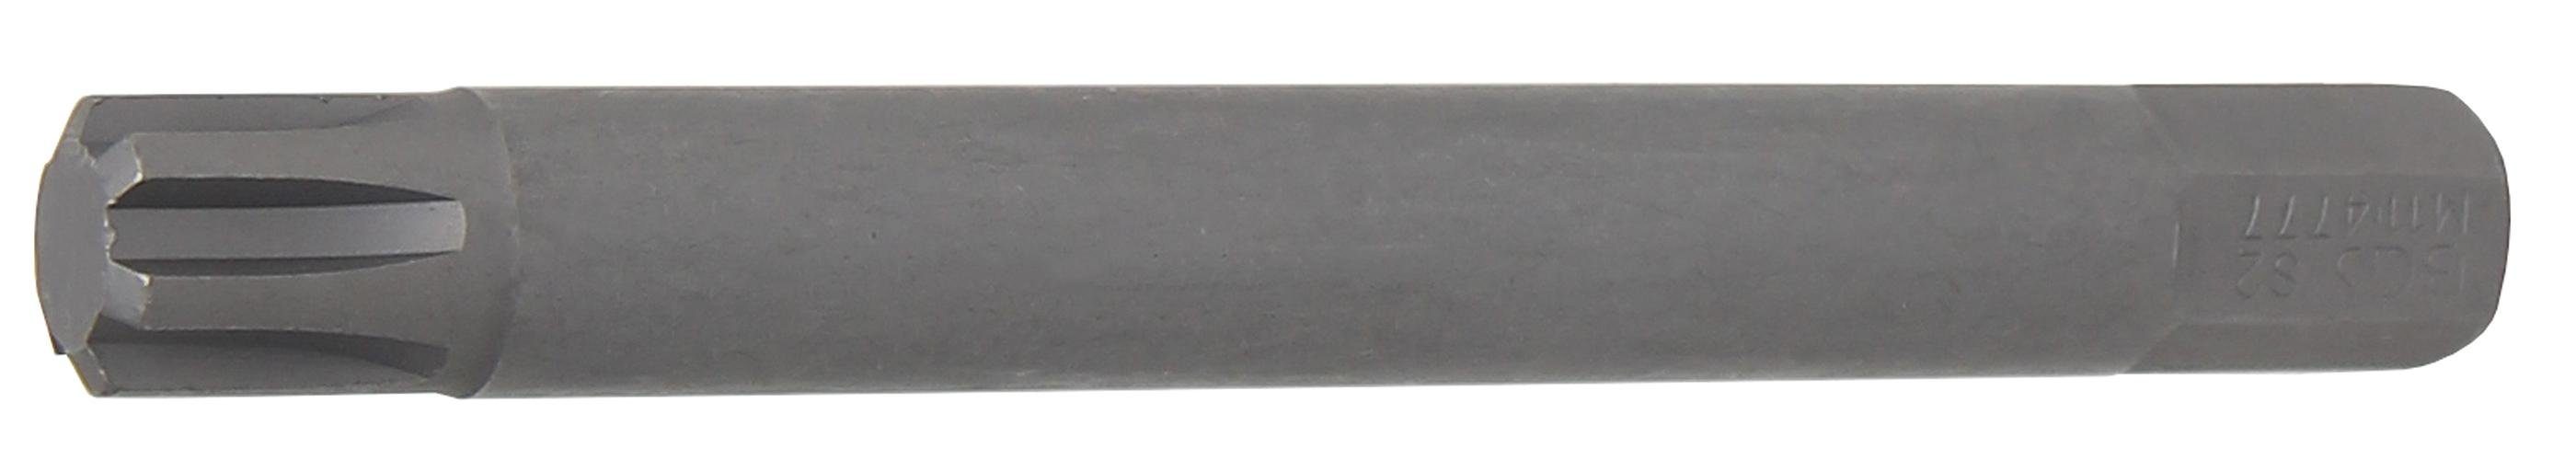 BGS technic Bit-Schraubendreher Bit, Länge 100 mm, Antrieb Außensechskant 10 mm (3/8), Keil-Profil (für RIBE) M11